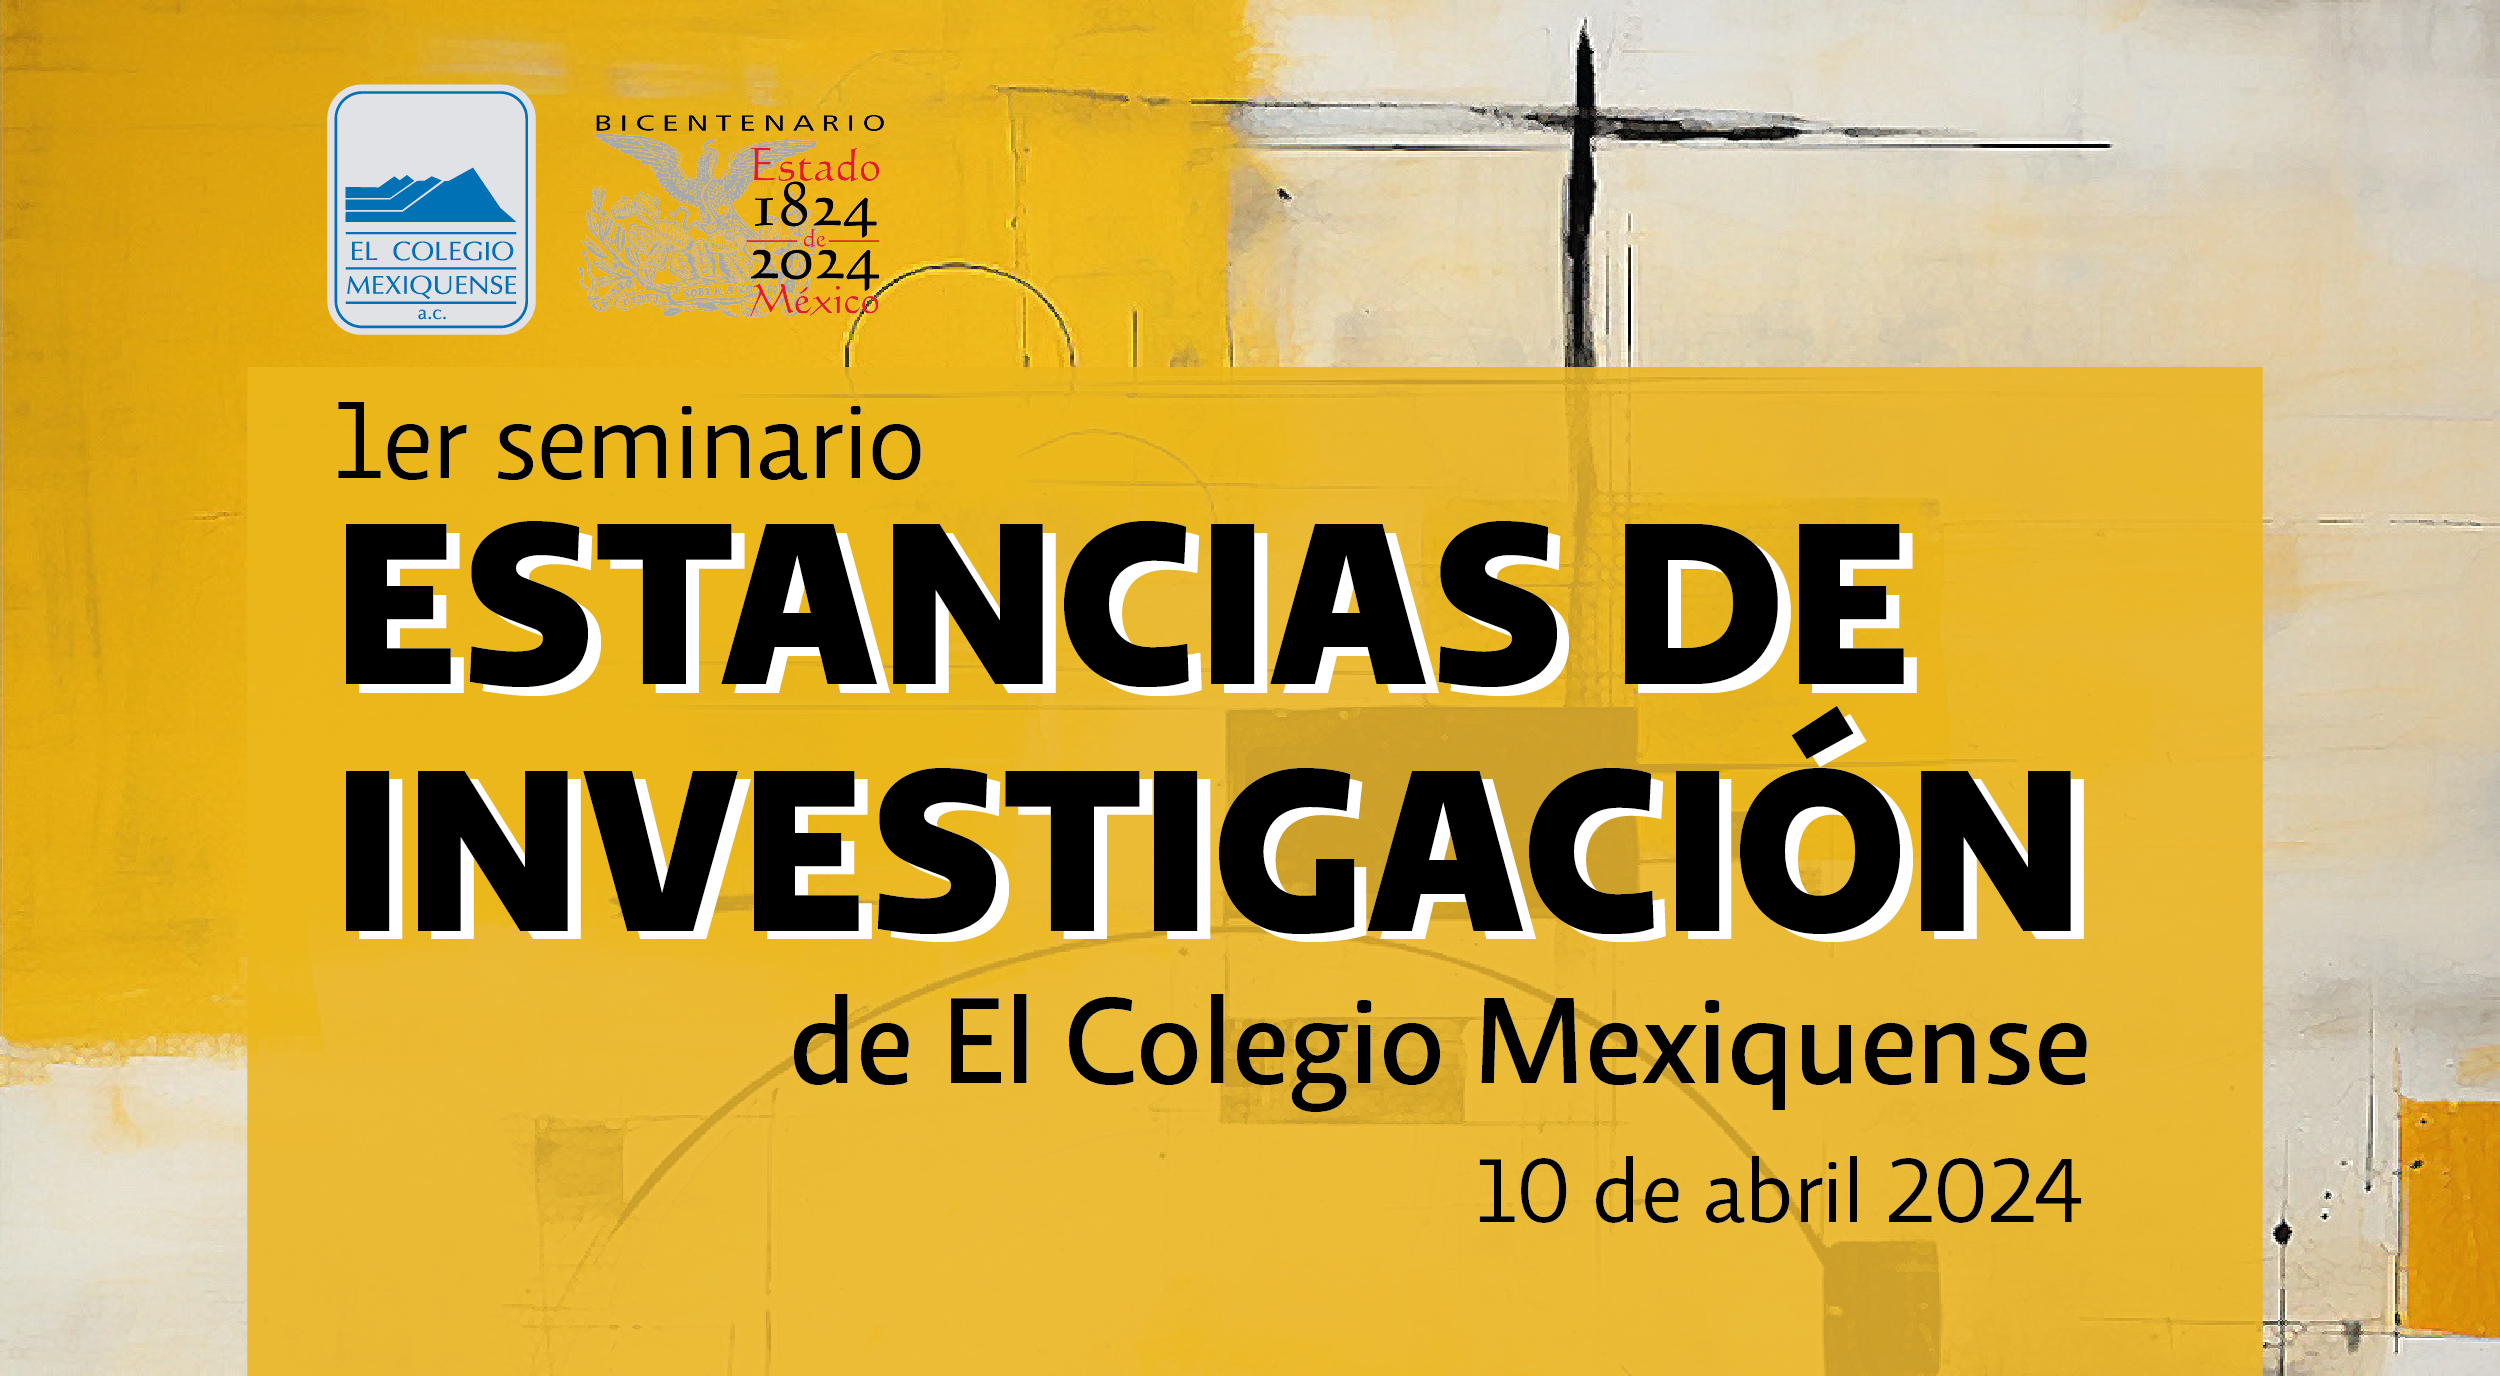 1er Seminario de Estancias de Investigación de El Colegio Mexiquense